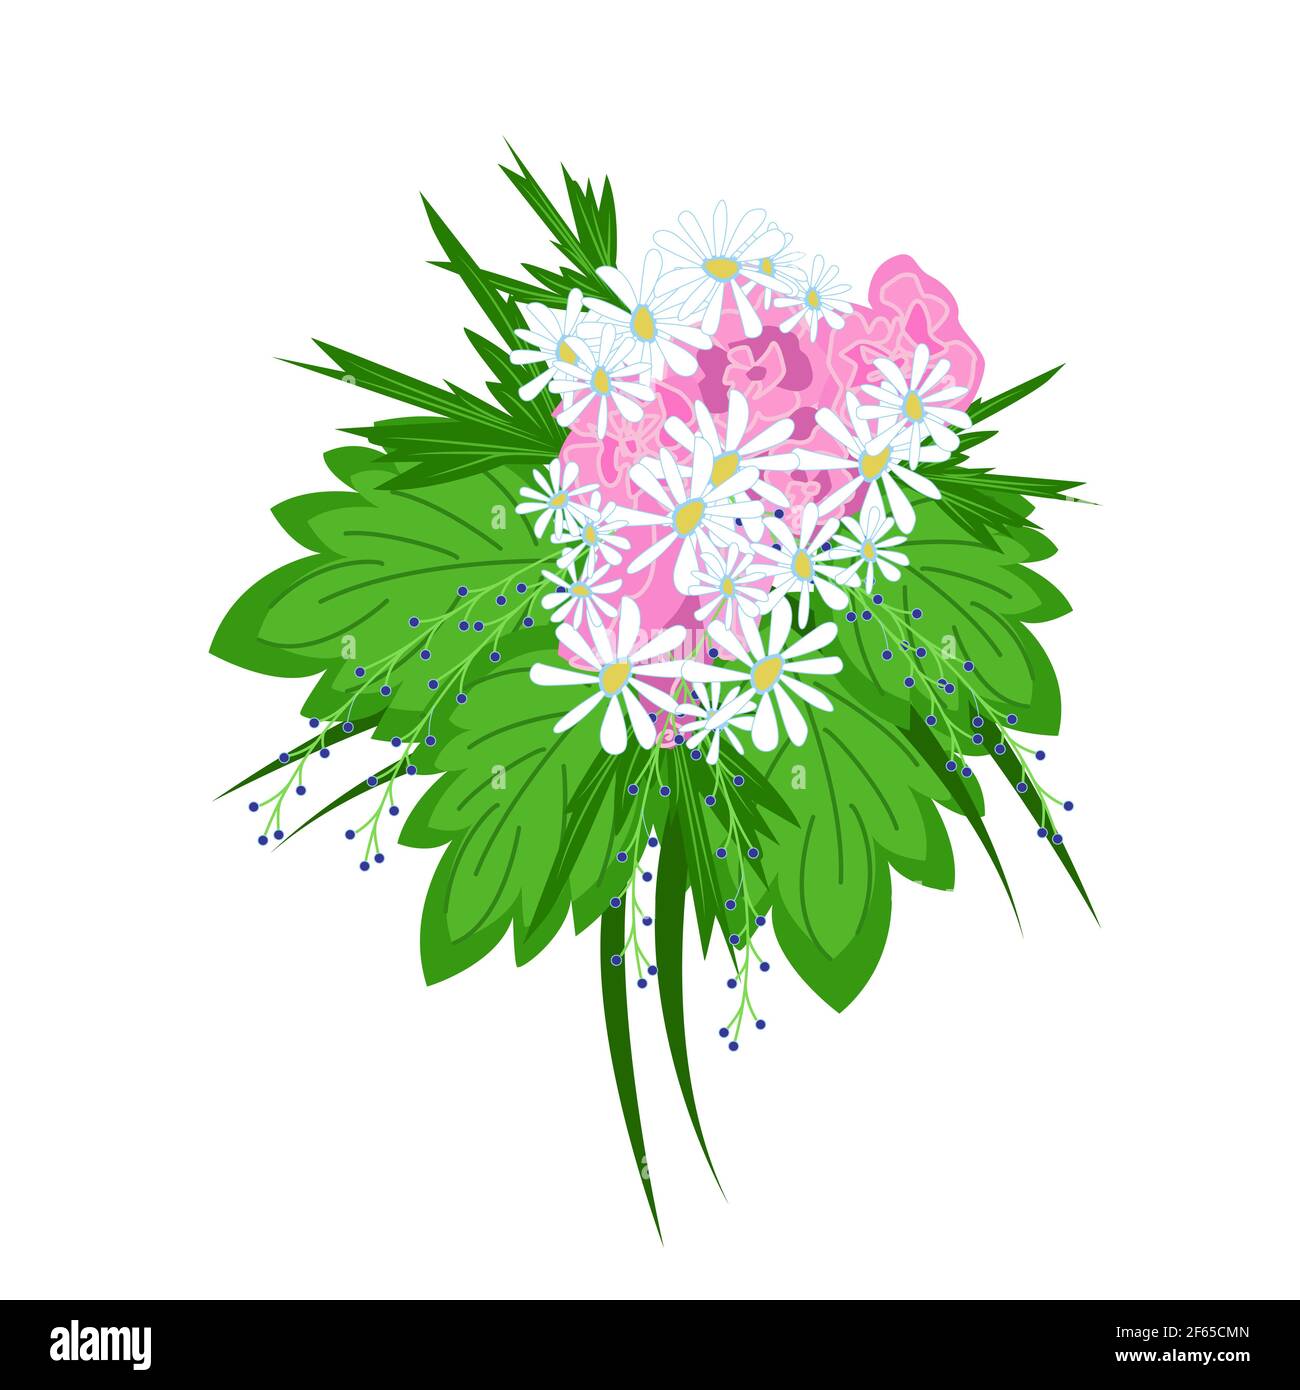 Großer üppiger Strauß von Gänseblümchen mit grünen tropischen Blättern verziert, schöne Blumen als Geschenk, Blumenarrangement in flachem Stil, Vektor Stock Vektor